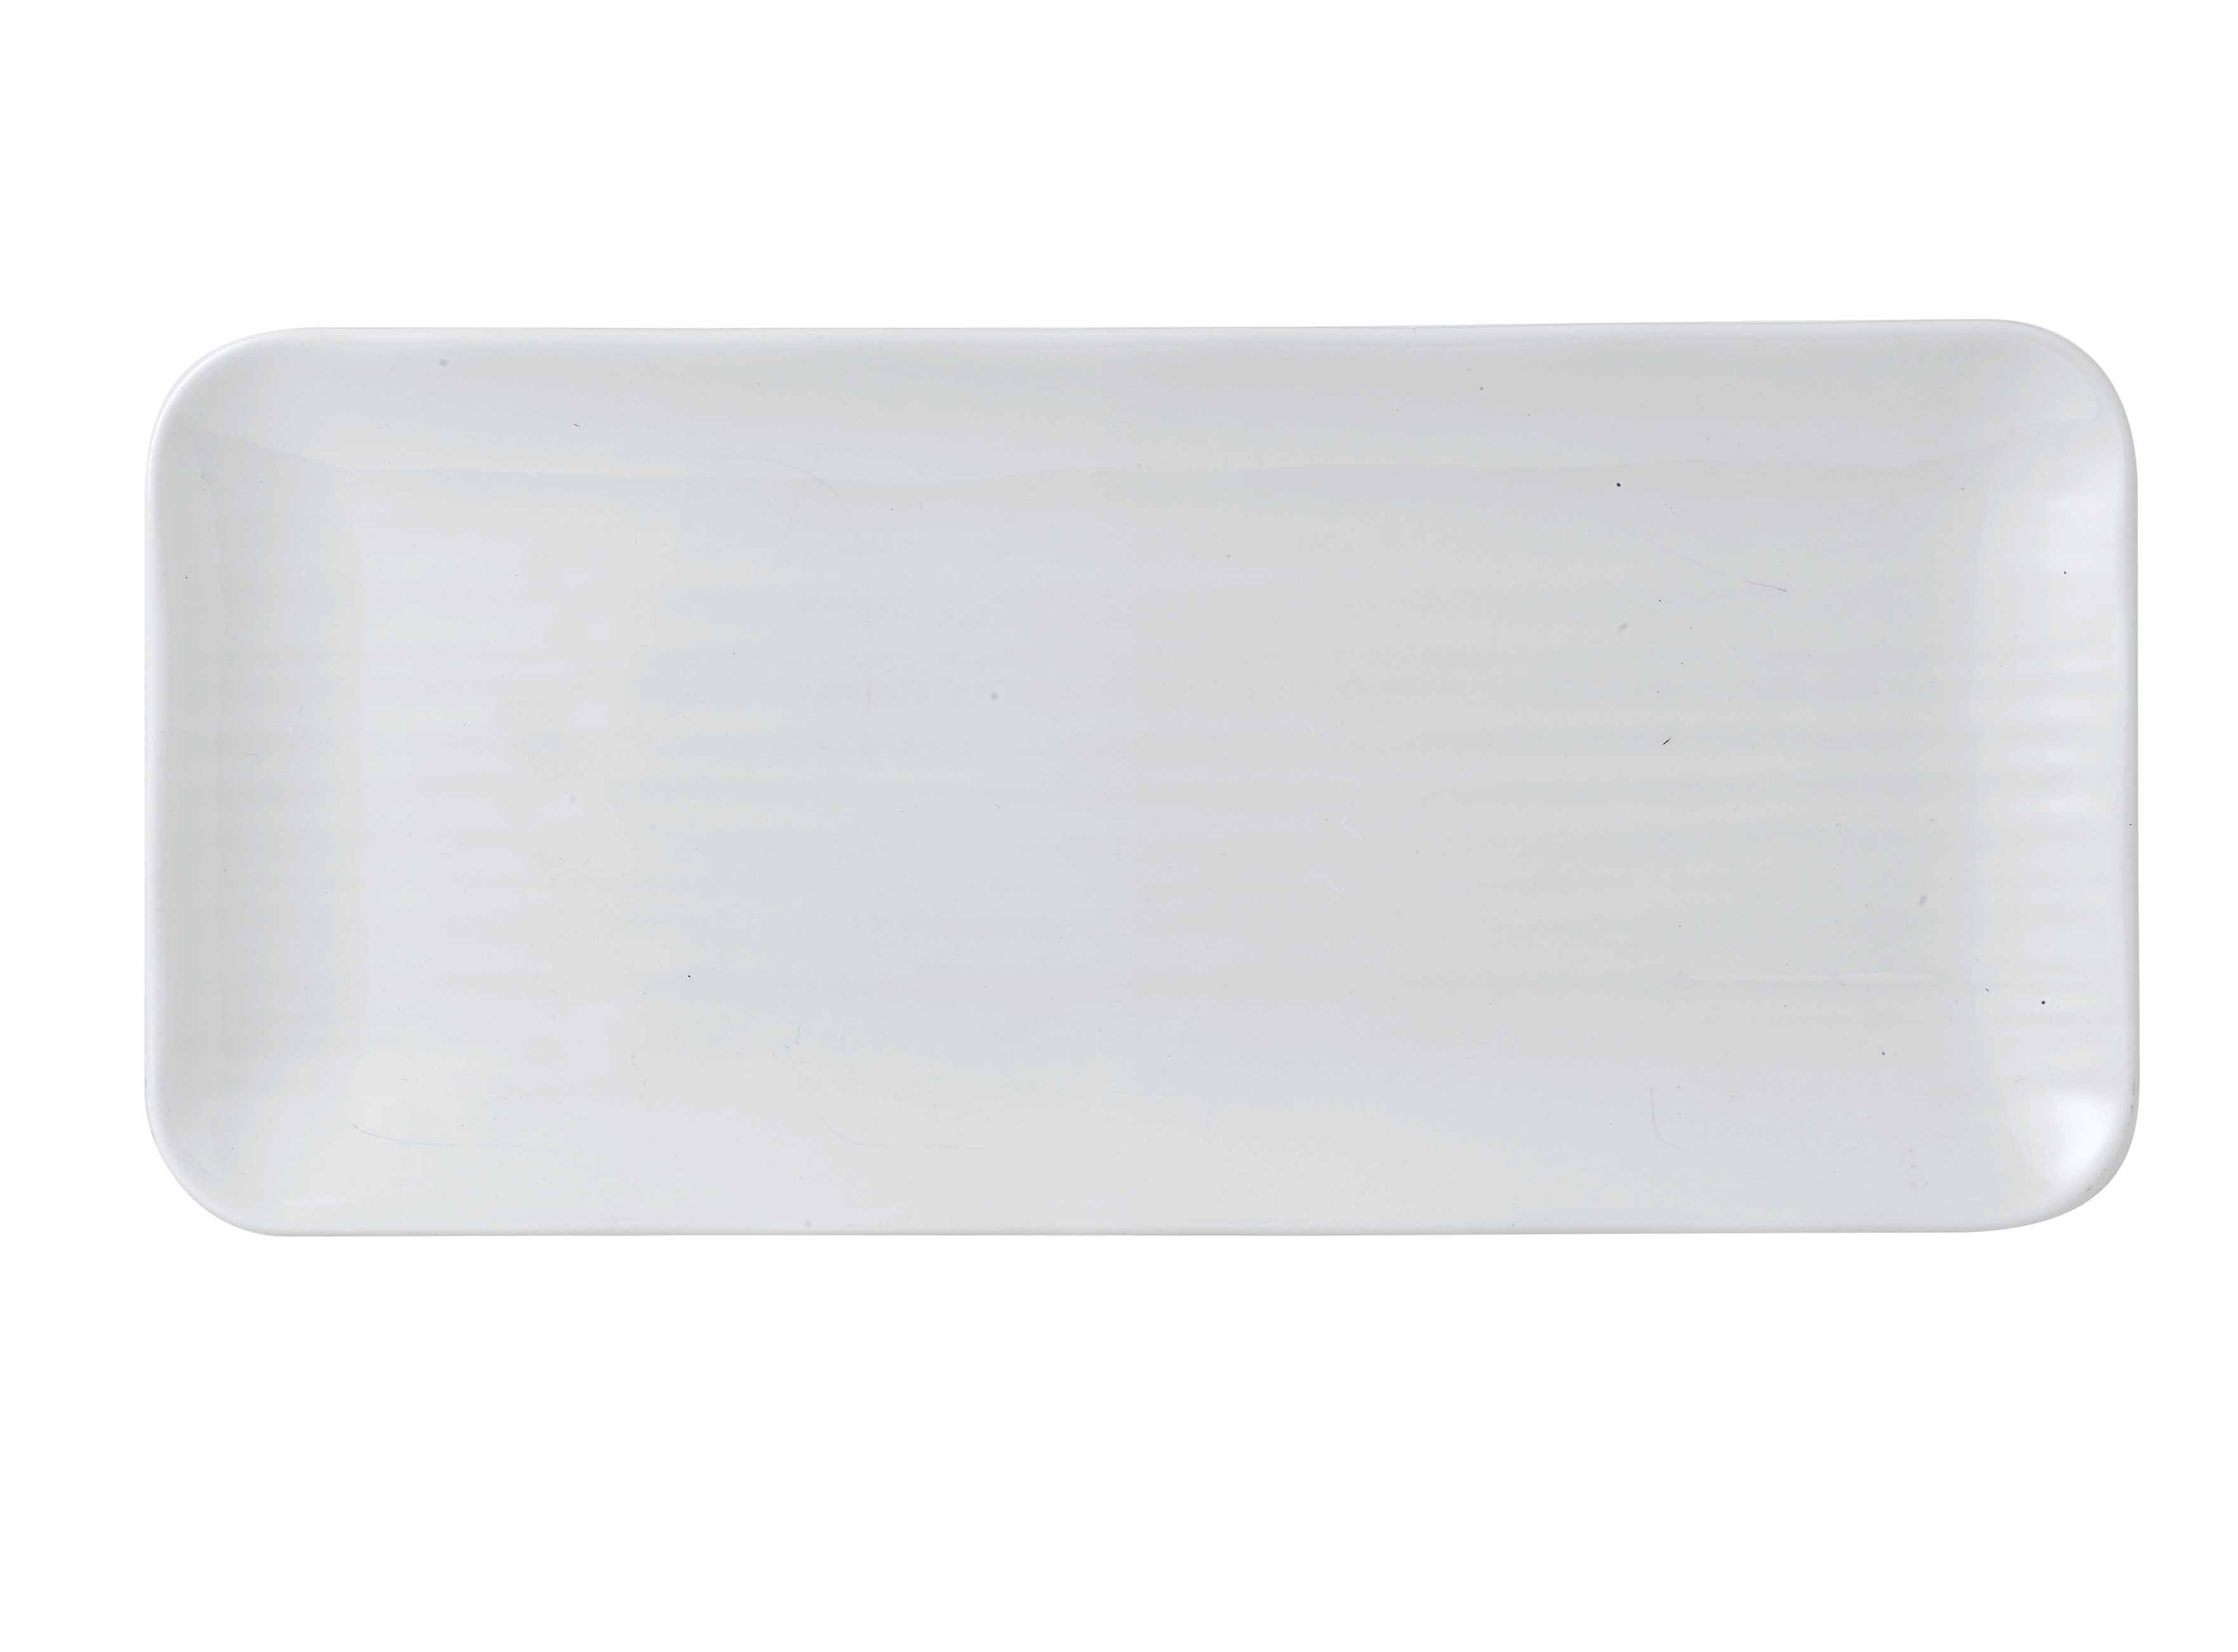 Tablett Servierbrett Dudson 6er, White Feinstes Porzellan Weiß Organisch 35X16Cm Recht. Dudson Langgezogen